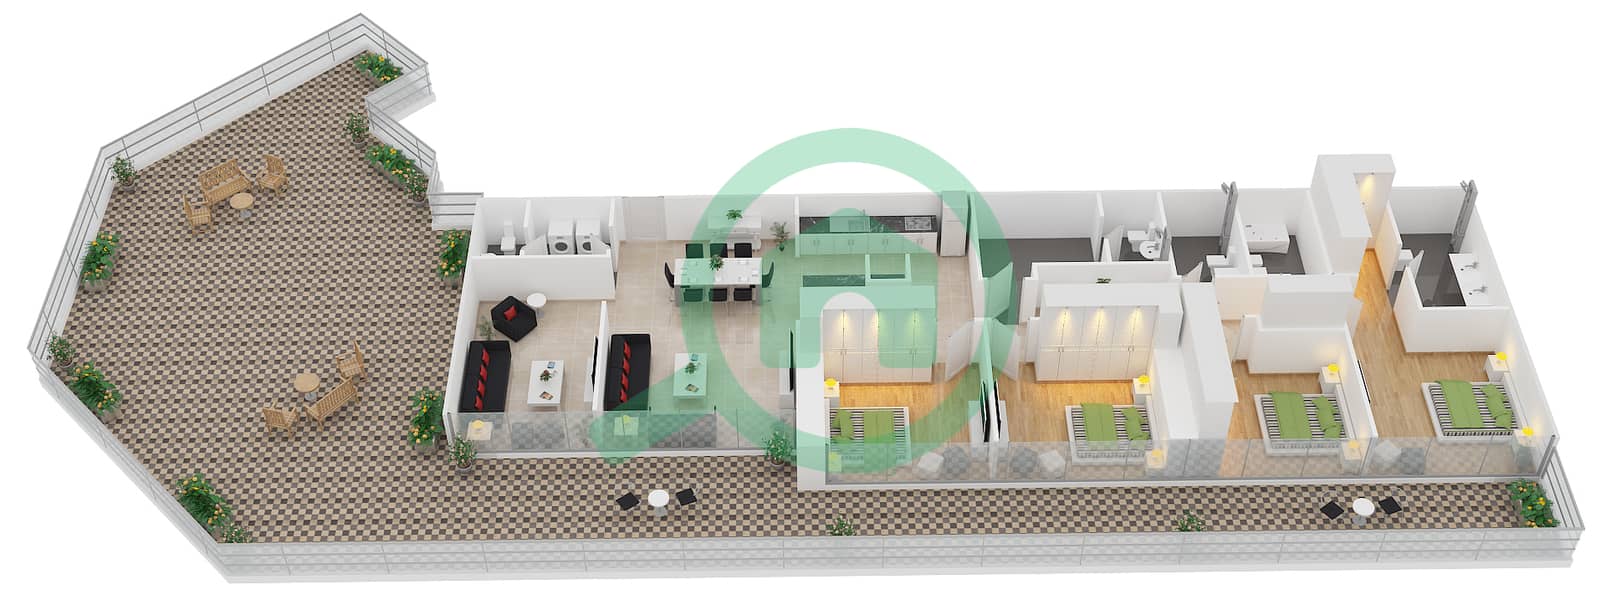 扎亚哈梅尼公寓 - 4 卧室公寓类型E1戶型图 interactive3D